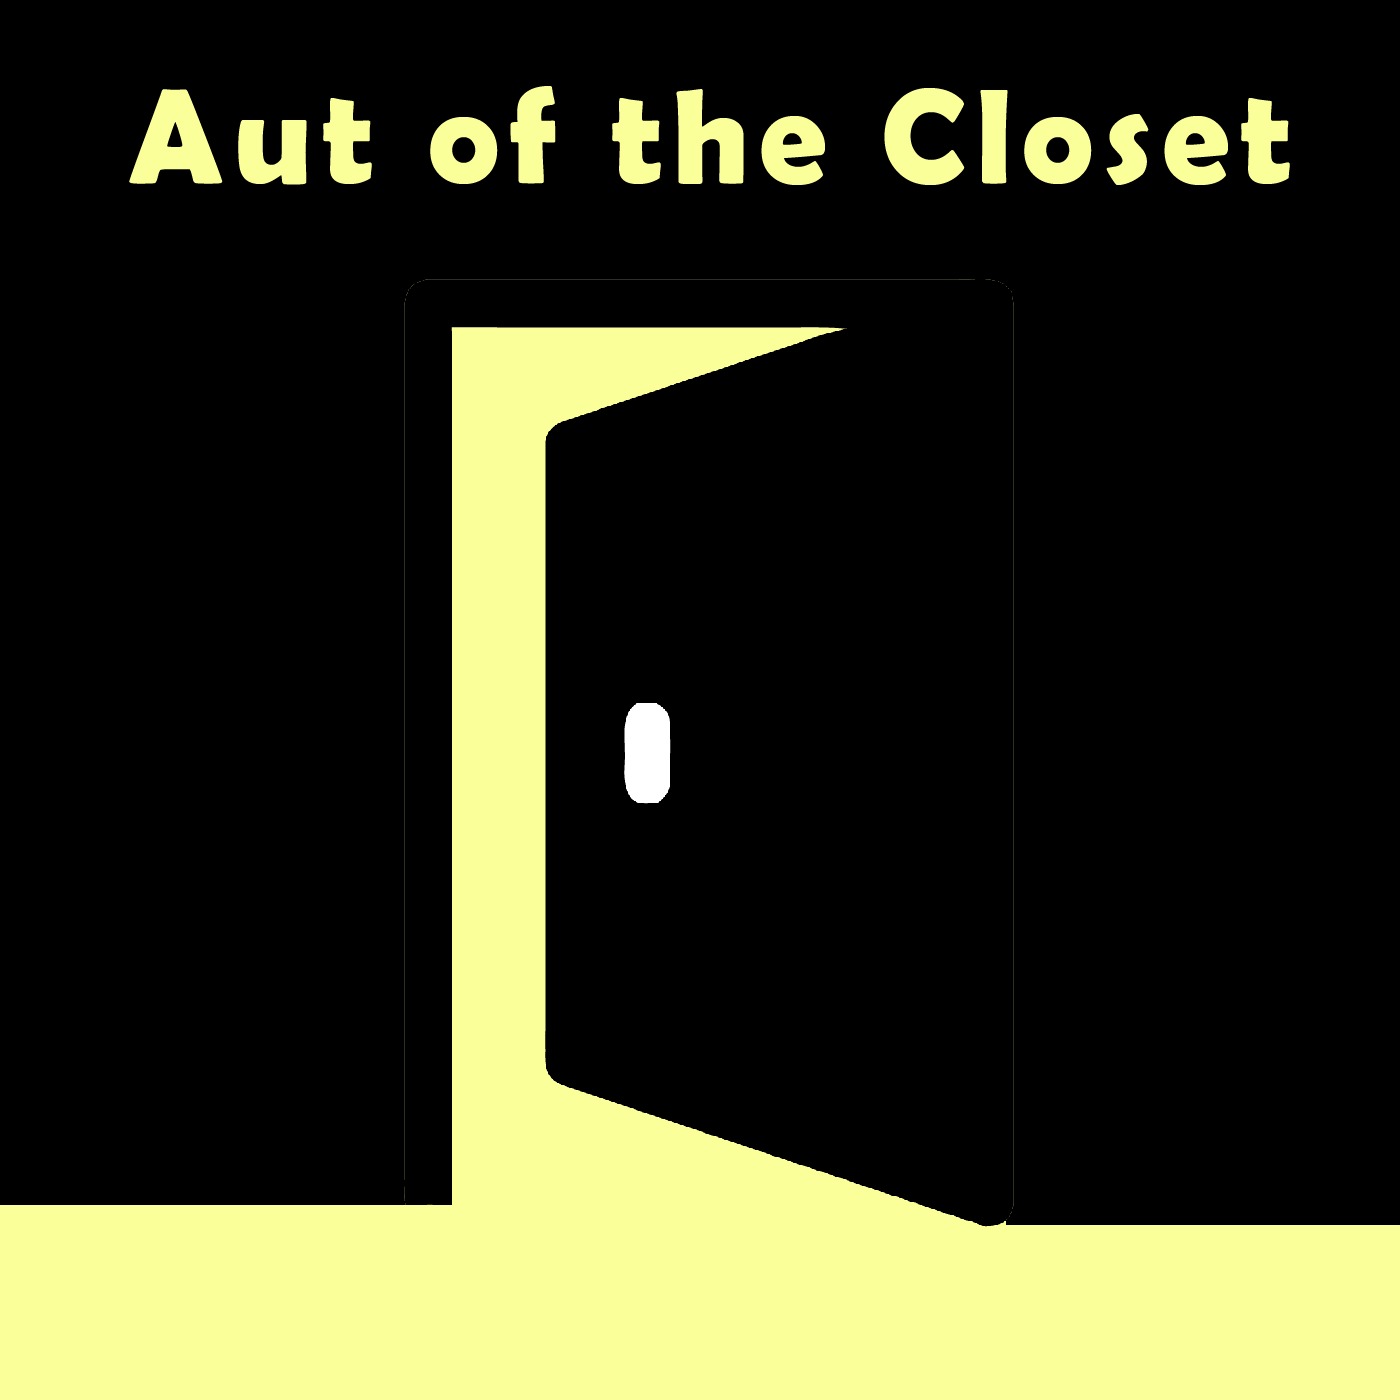 Aut of the Closet